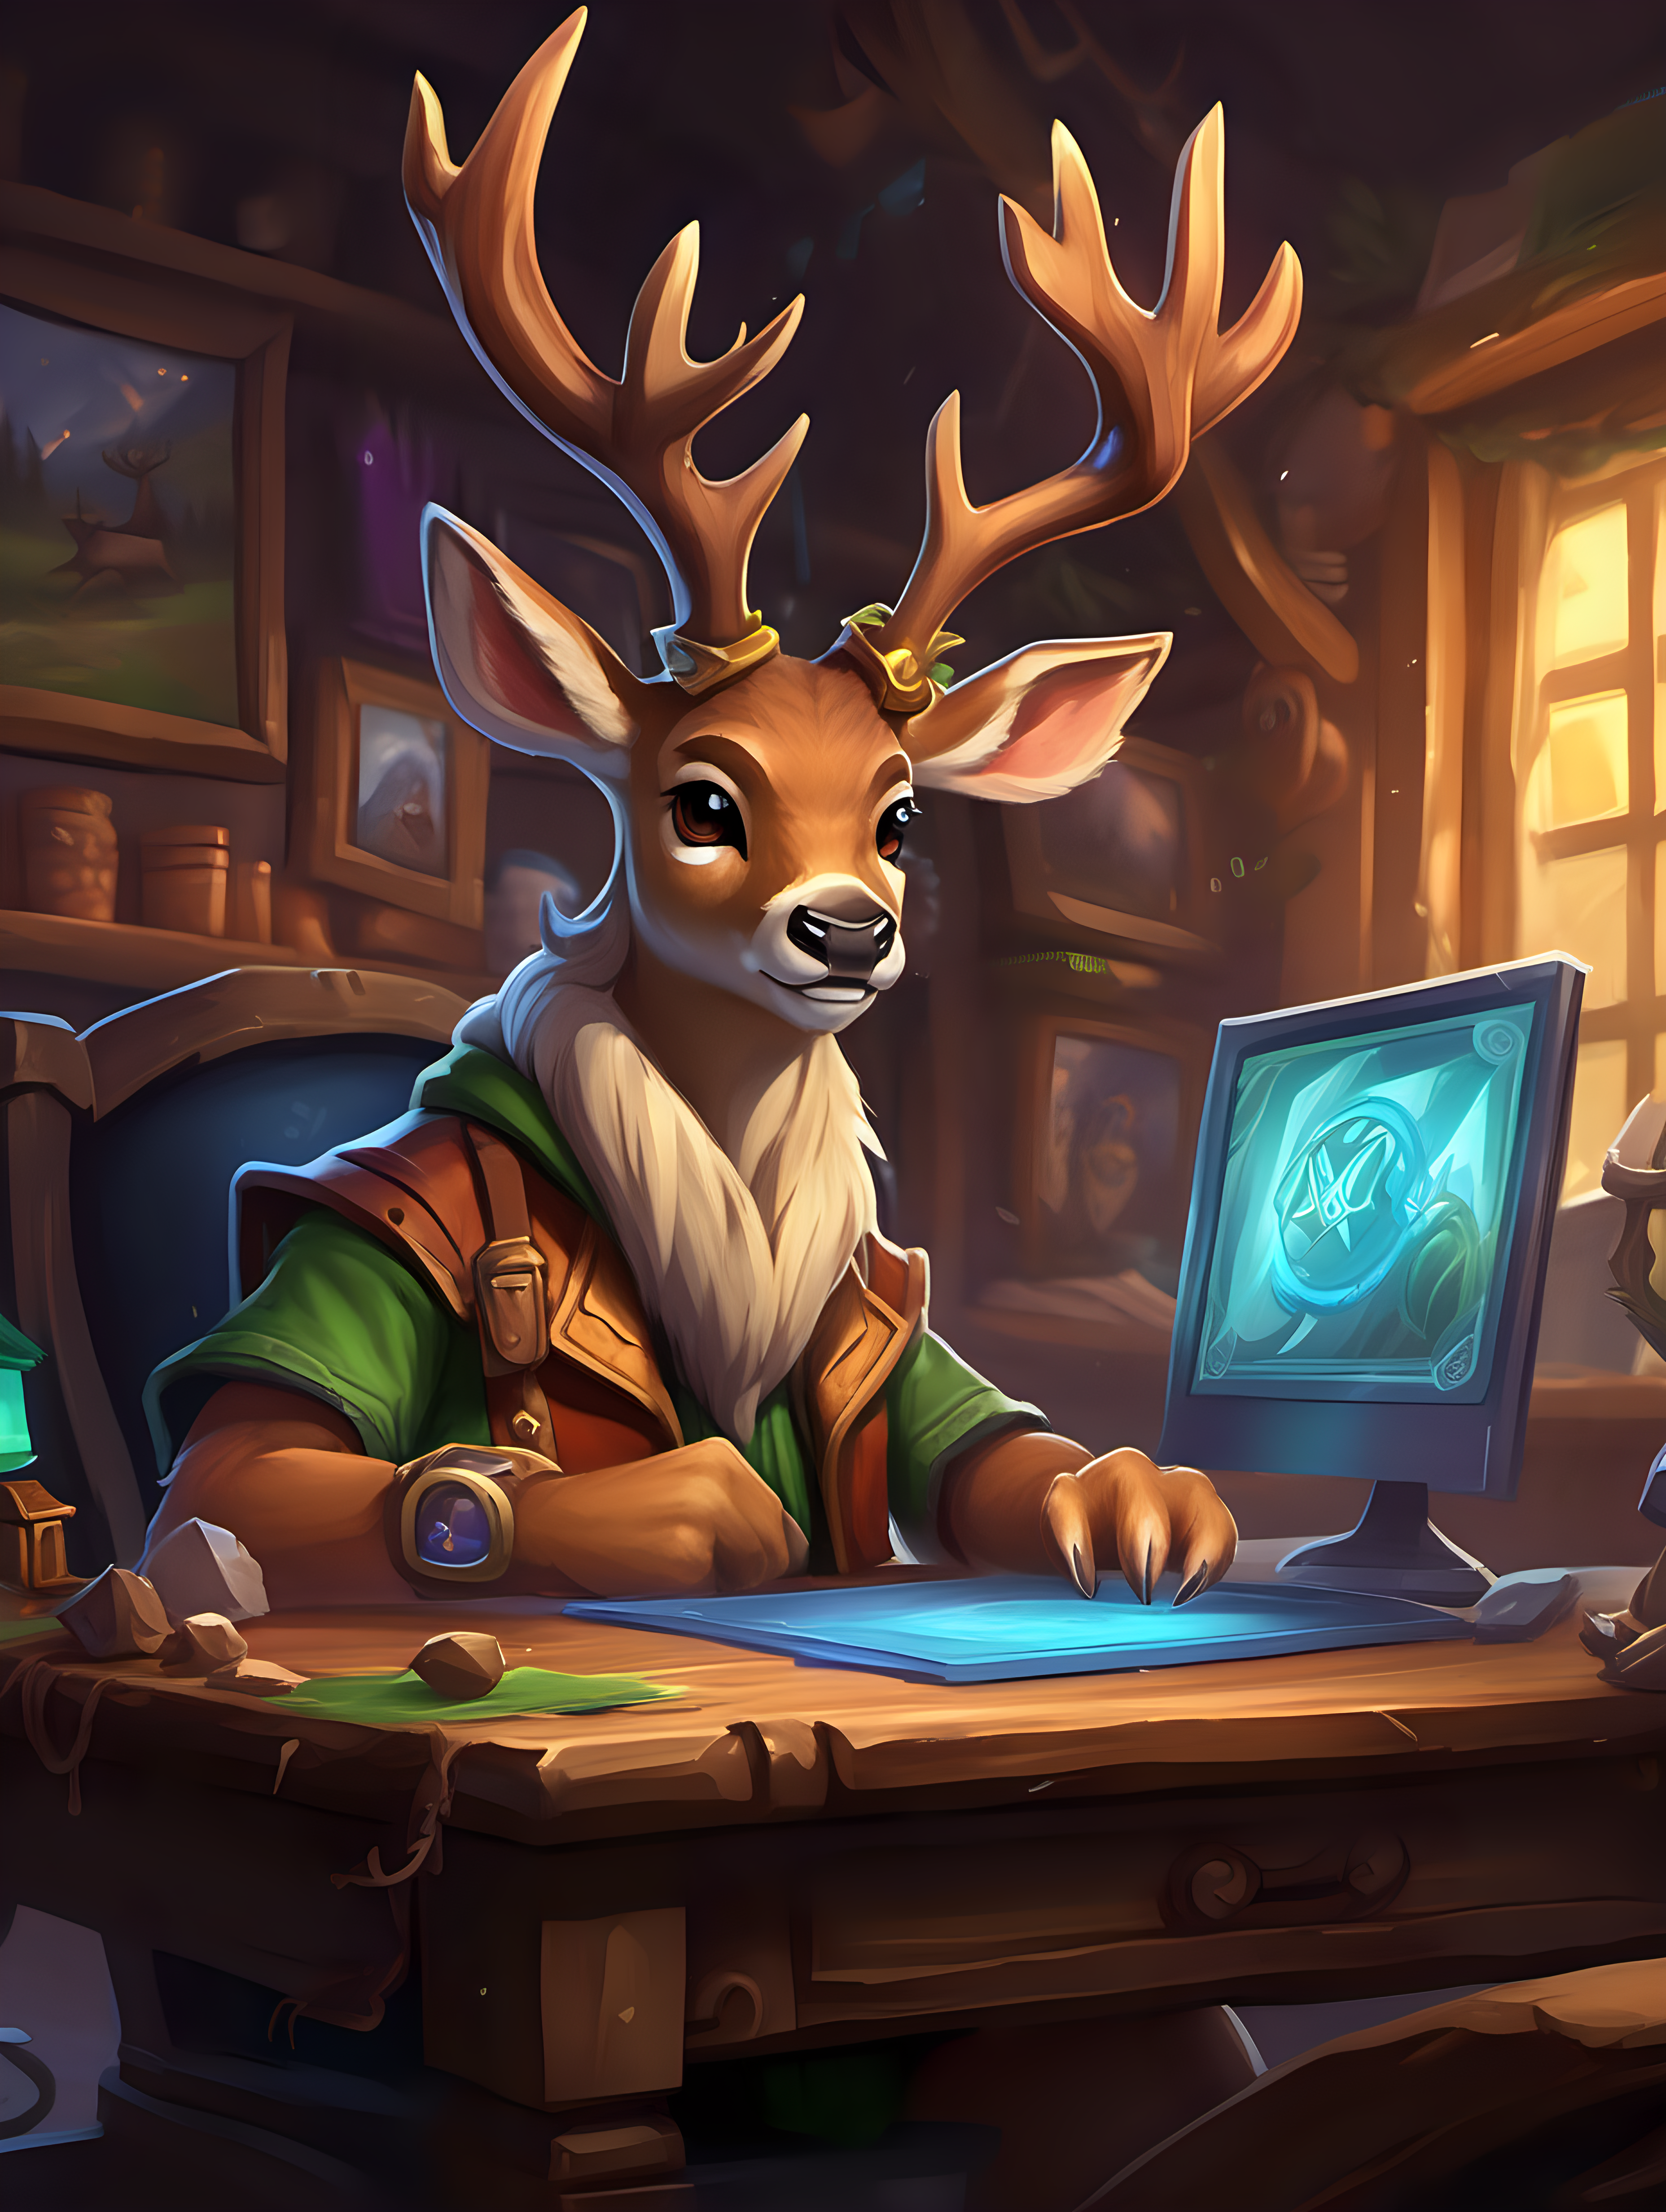 Digital art in the style of hearthstone cards art. Deer in his gaming desk